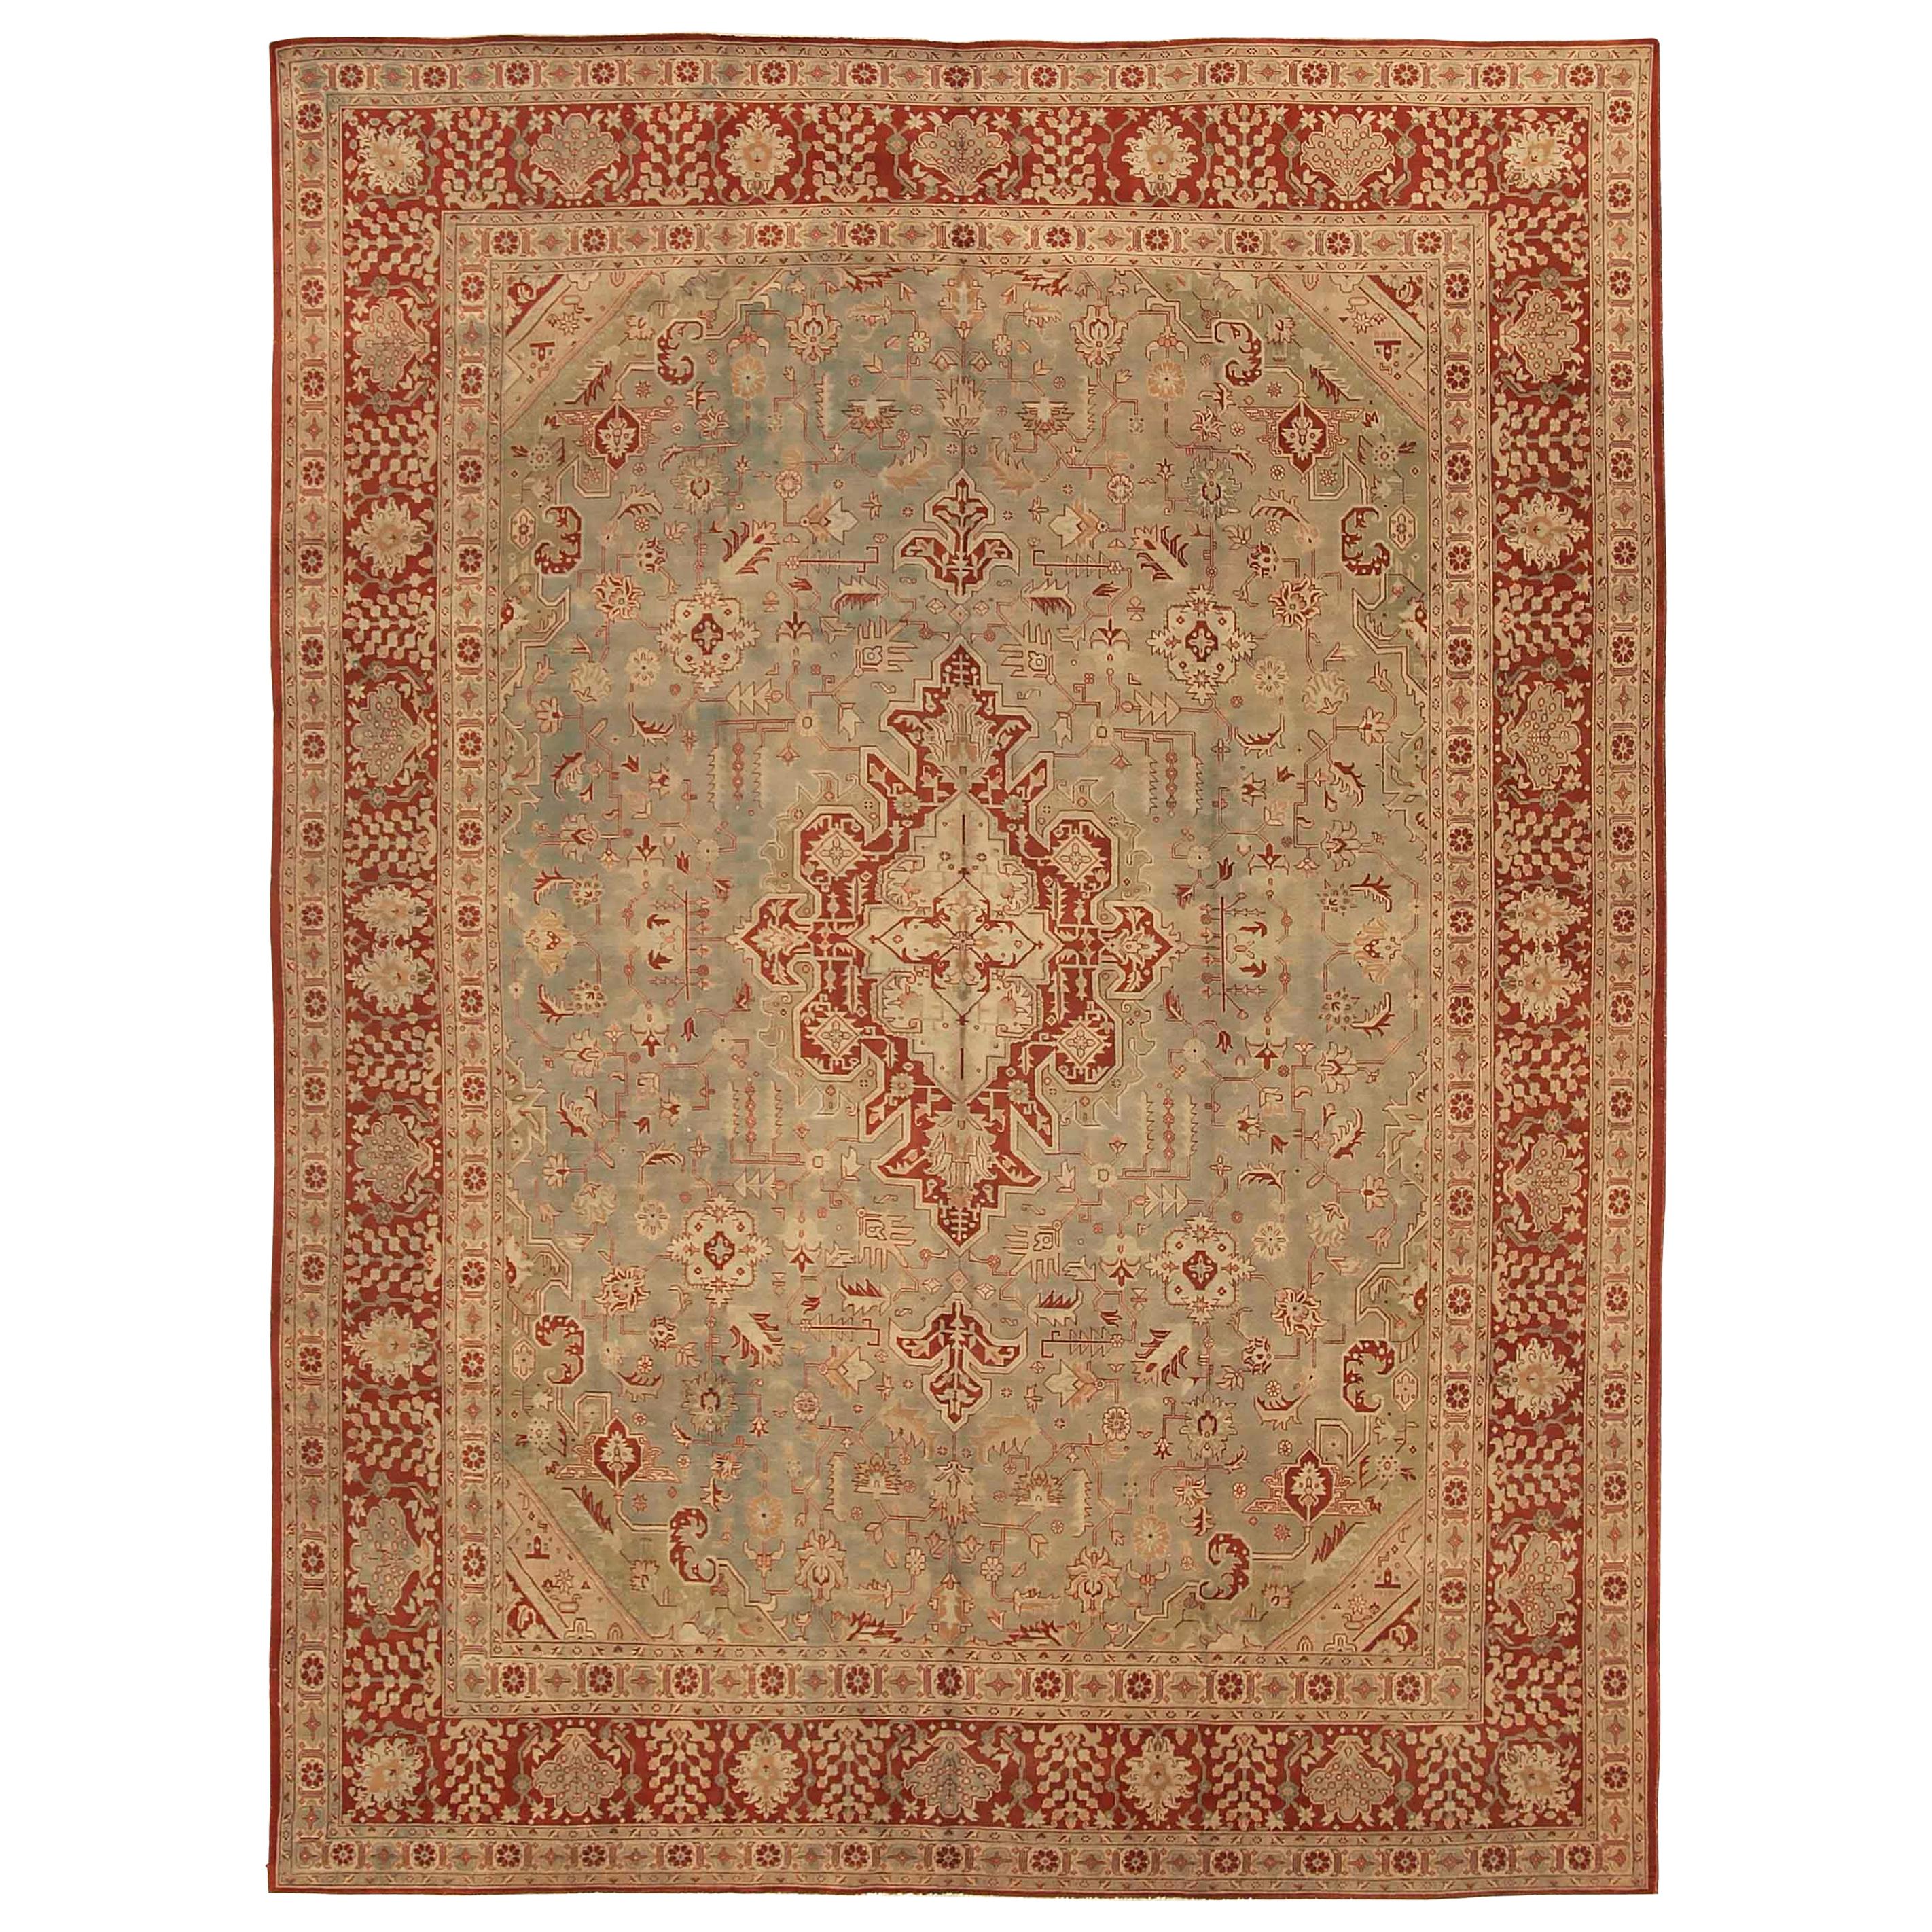 Antiker persischer Täbriz-Teppich mit floralen Details auf rotem/beigefarbenem Feld